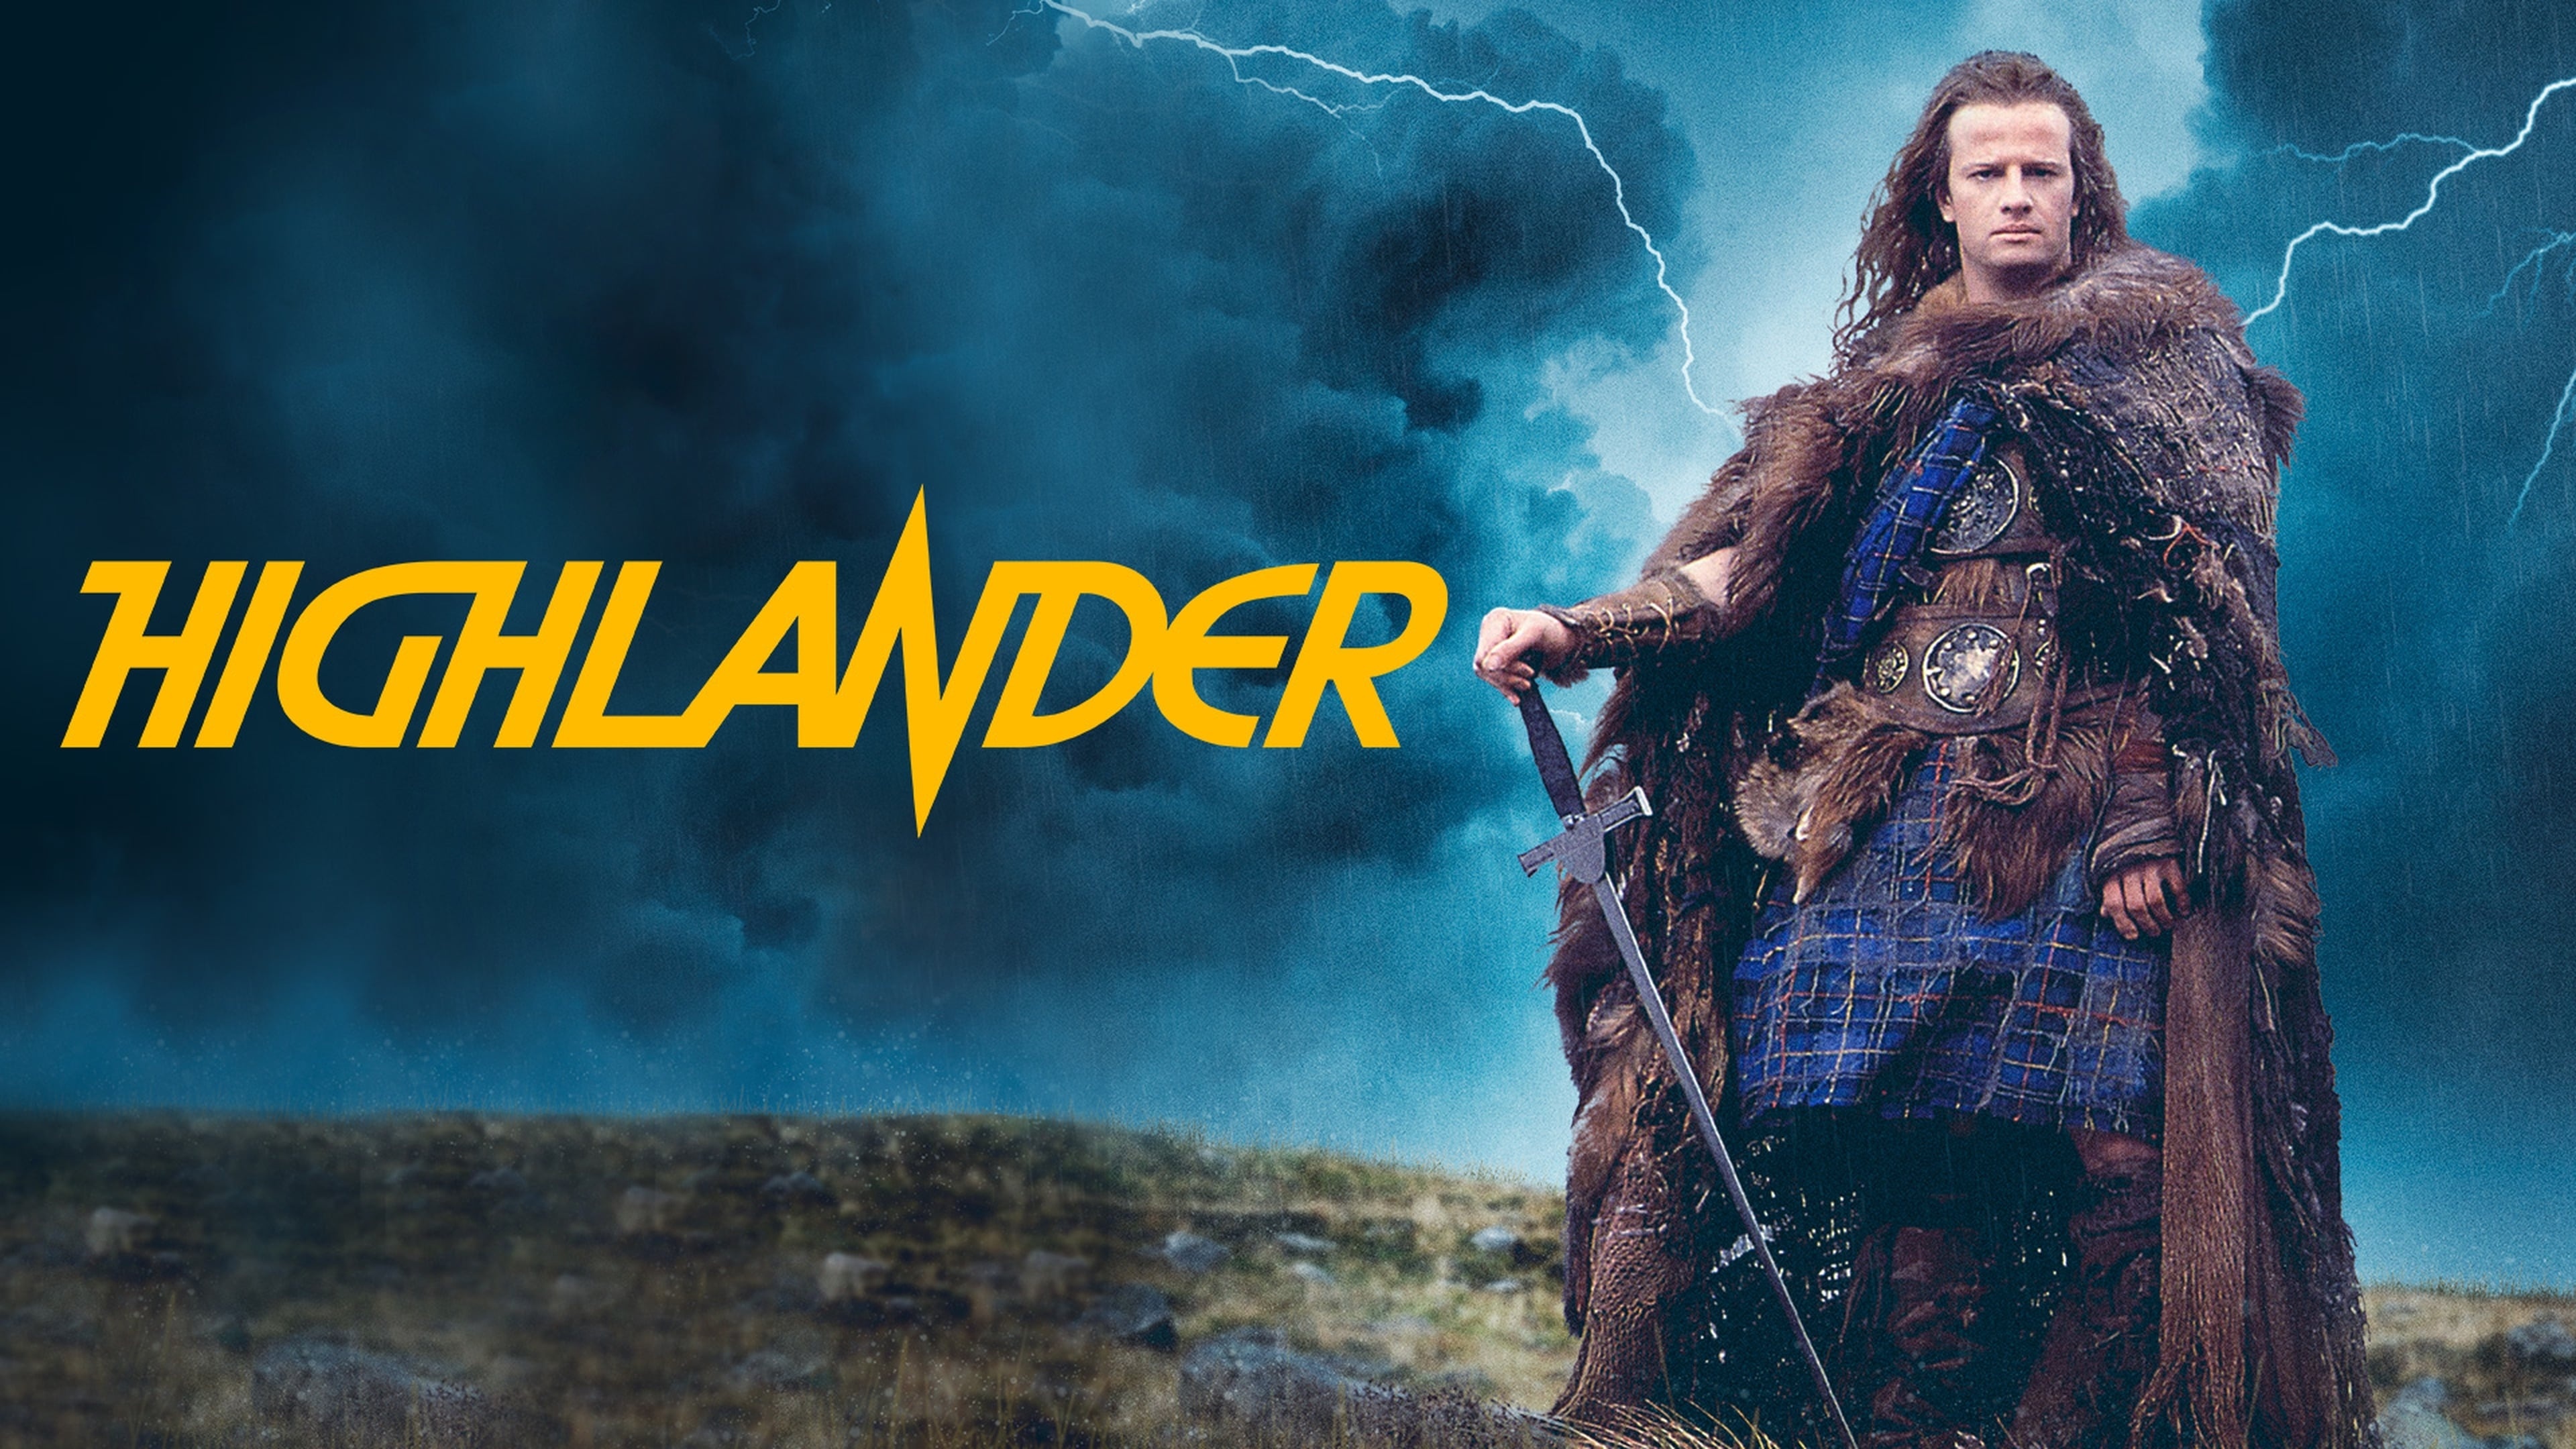 Highlander, Immortal warriors, Scottish Highlander, Fantasy adventure, 3840x2160 4K Desktop